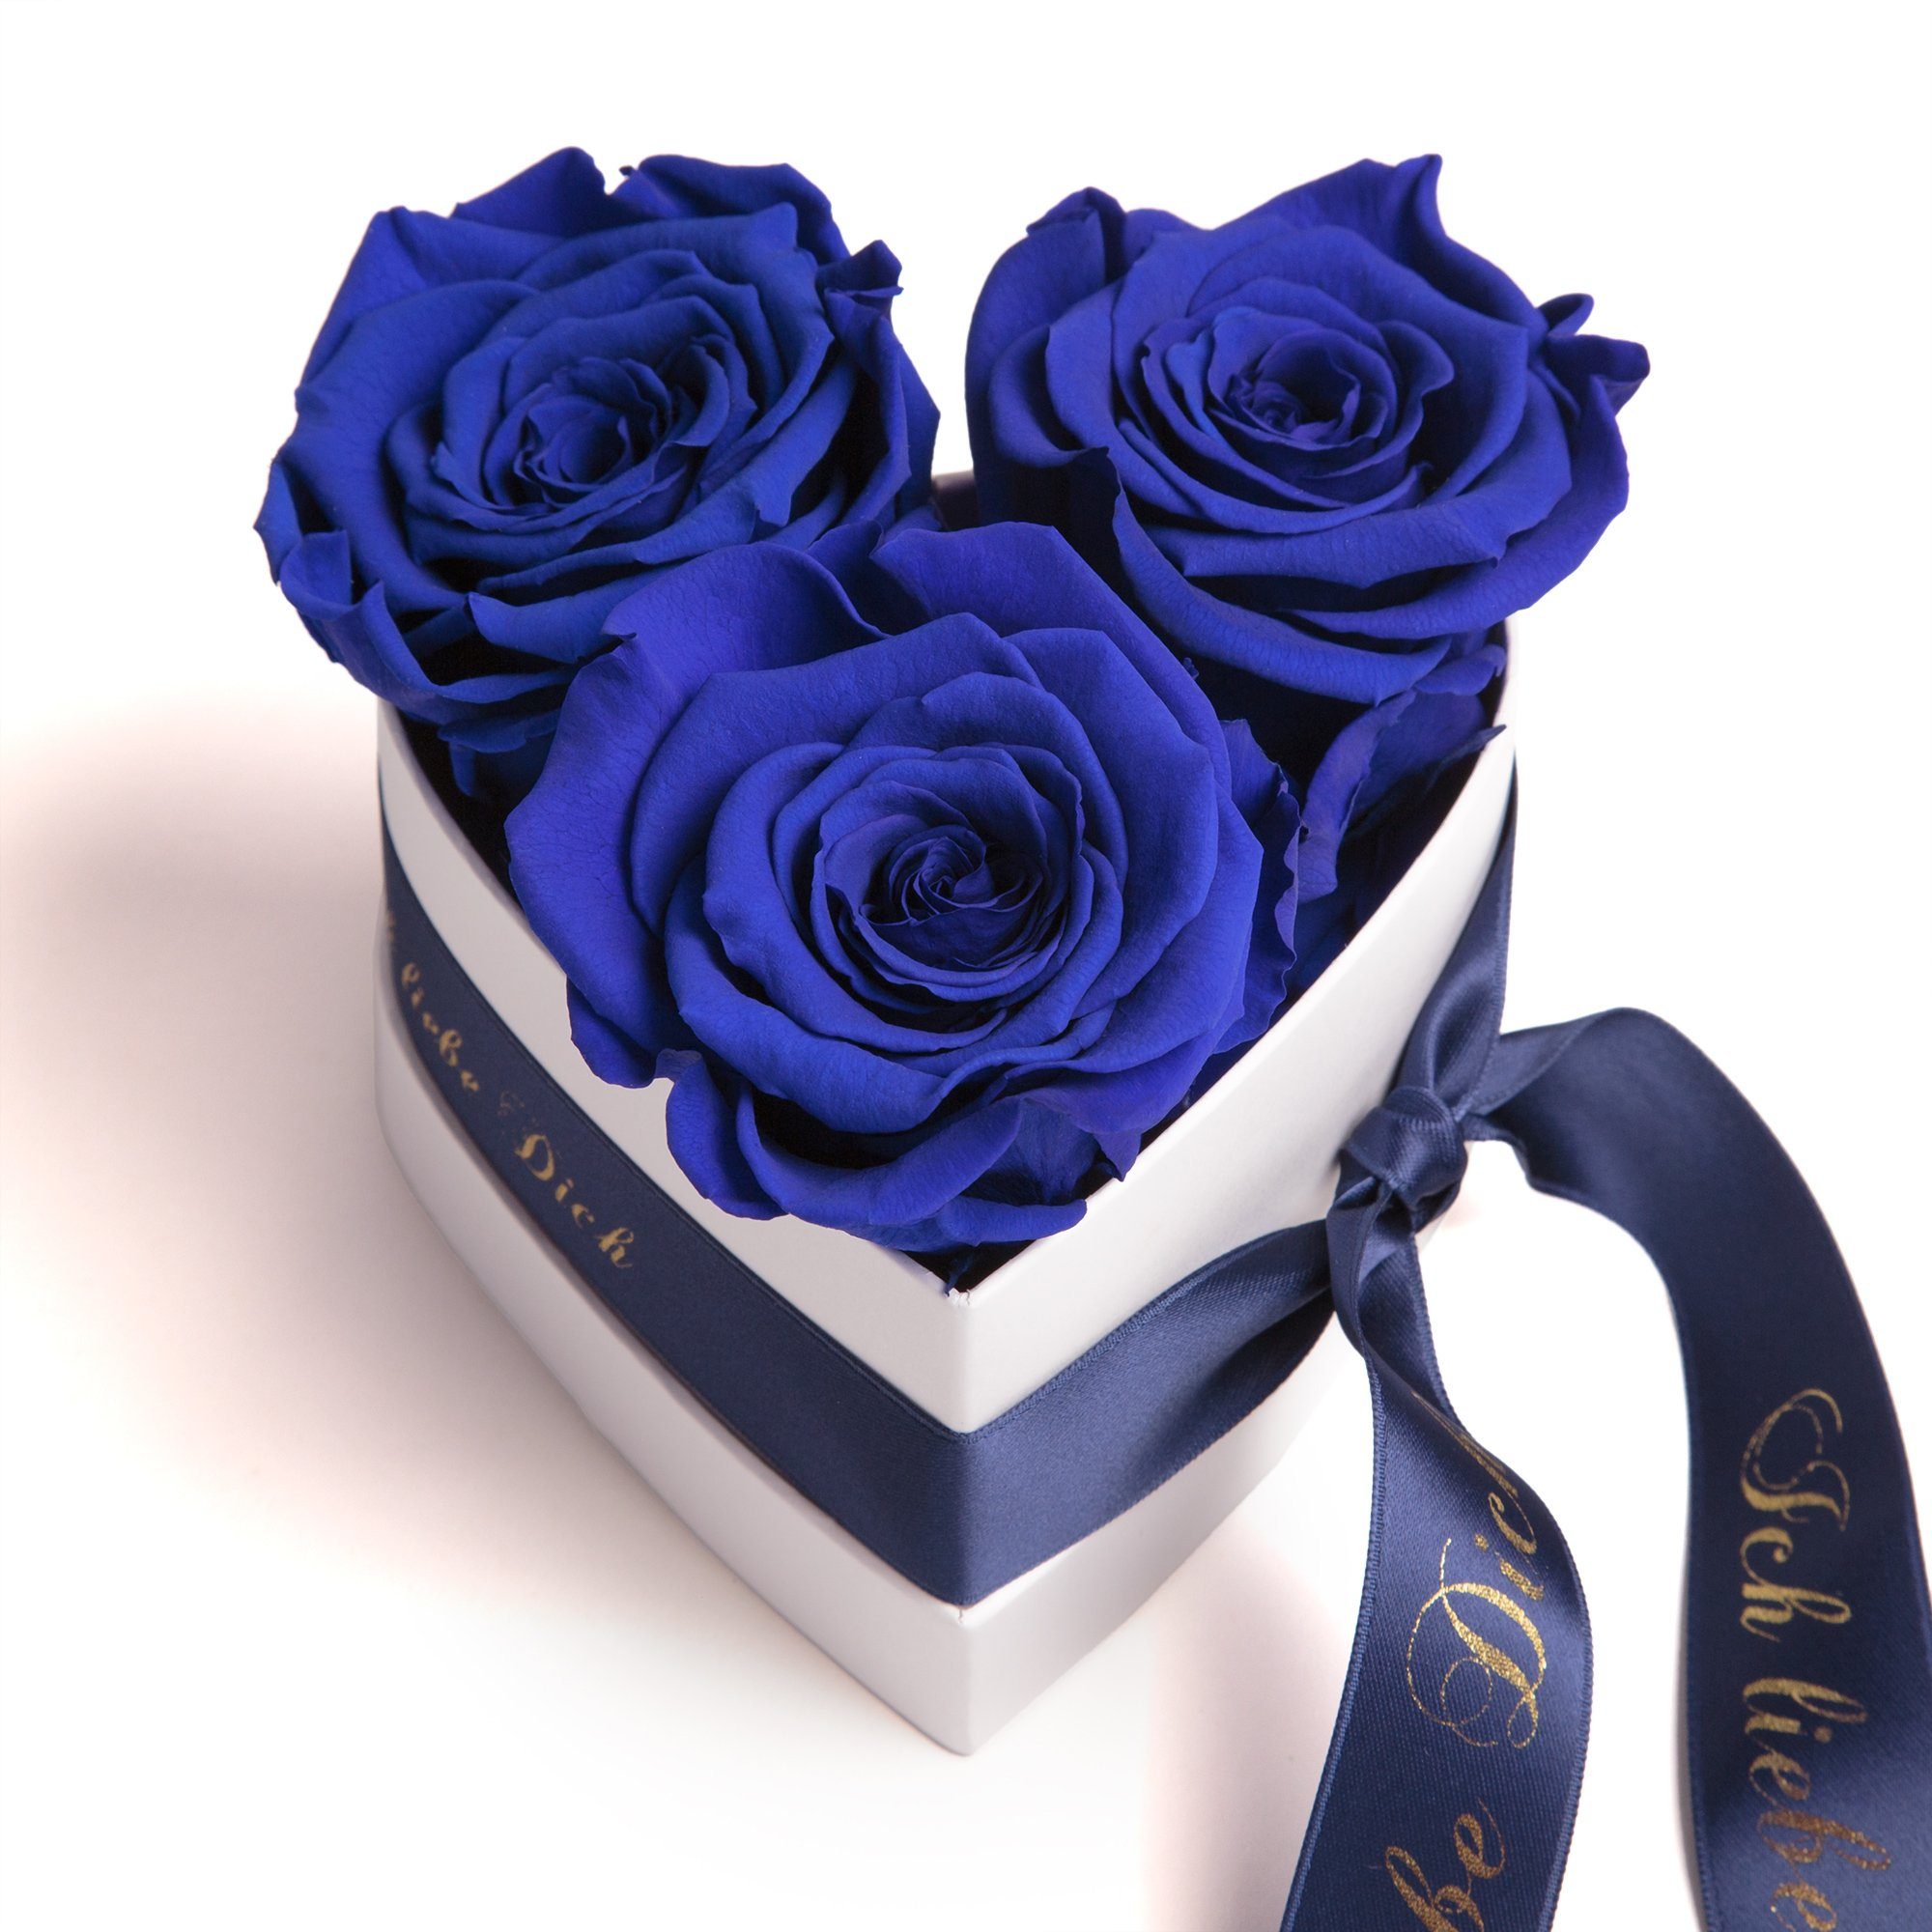 für blau Höhe Heidelberg, 10 cm, Rosenbox Liebesbeweis Valentinstag liebe Kunstblume 3 Rose, ROSEMARIE Dich Rosen Ich infinity SCHULZ Herz Geschenk Sie